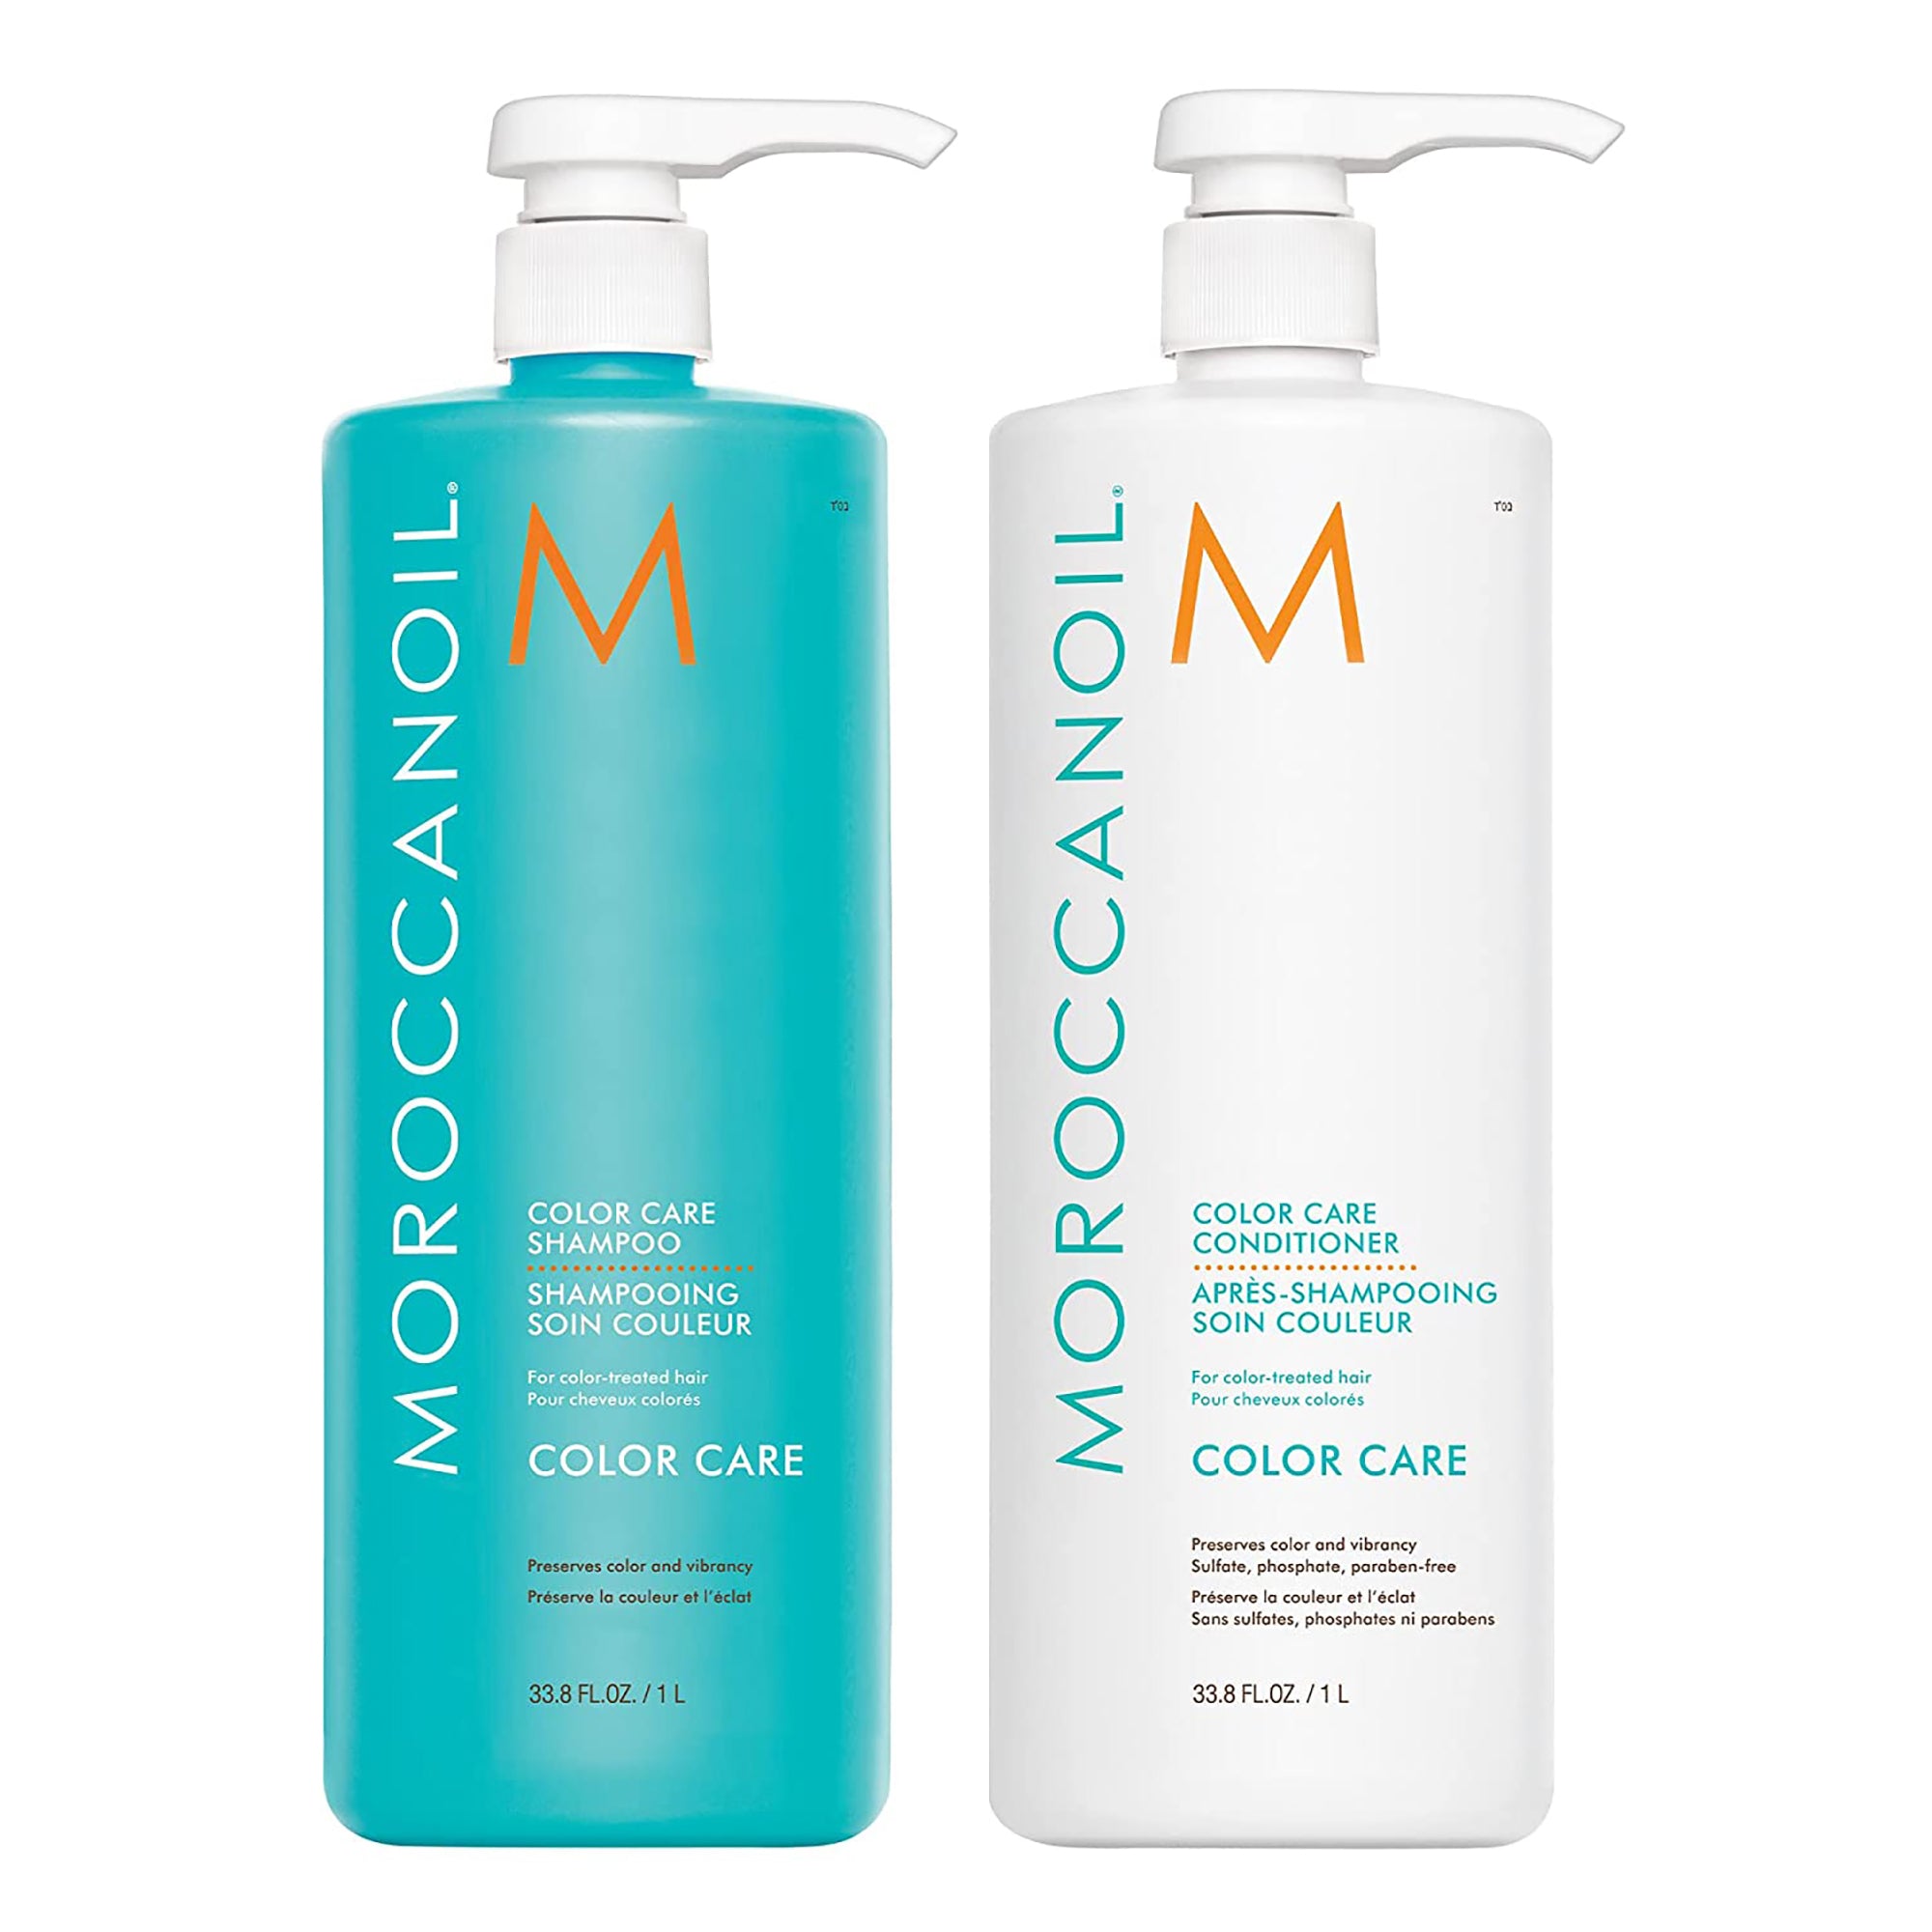 Moroccan Oil Color Care Shampoo & Conditioner Liter Duo / 33.8OZ